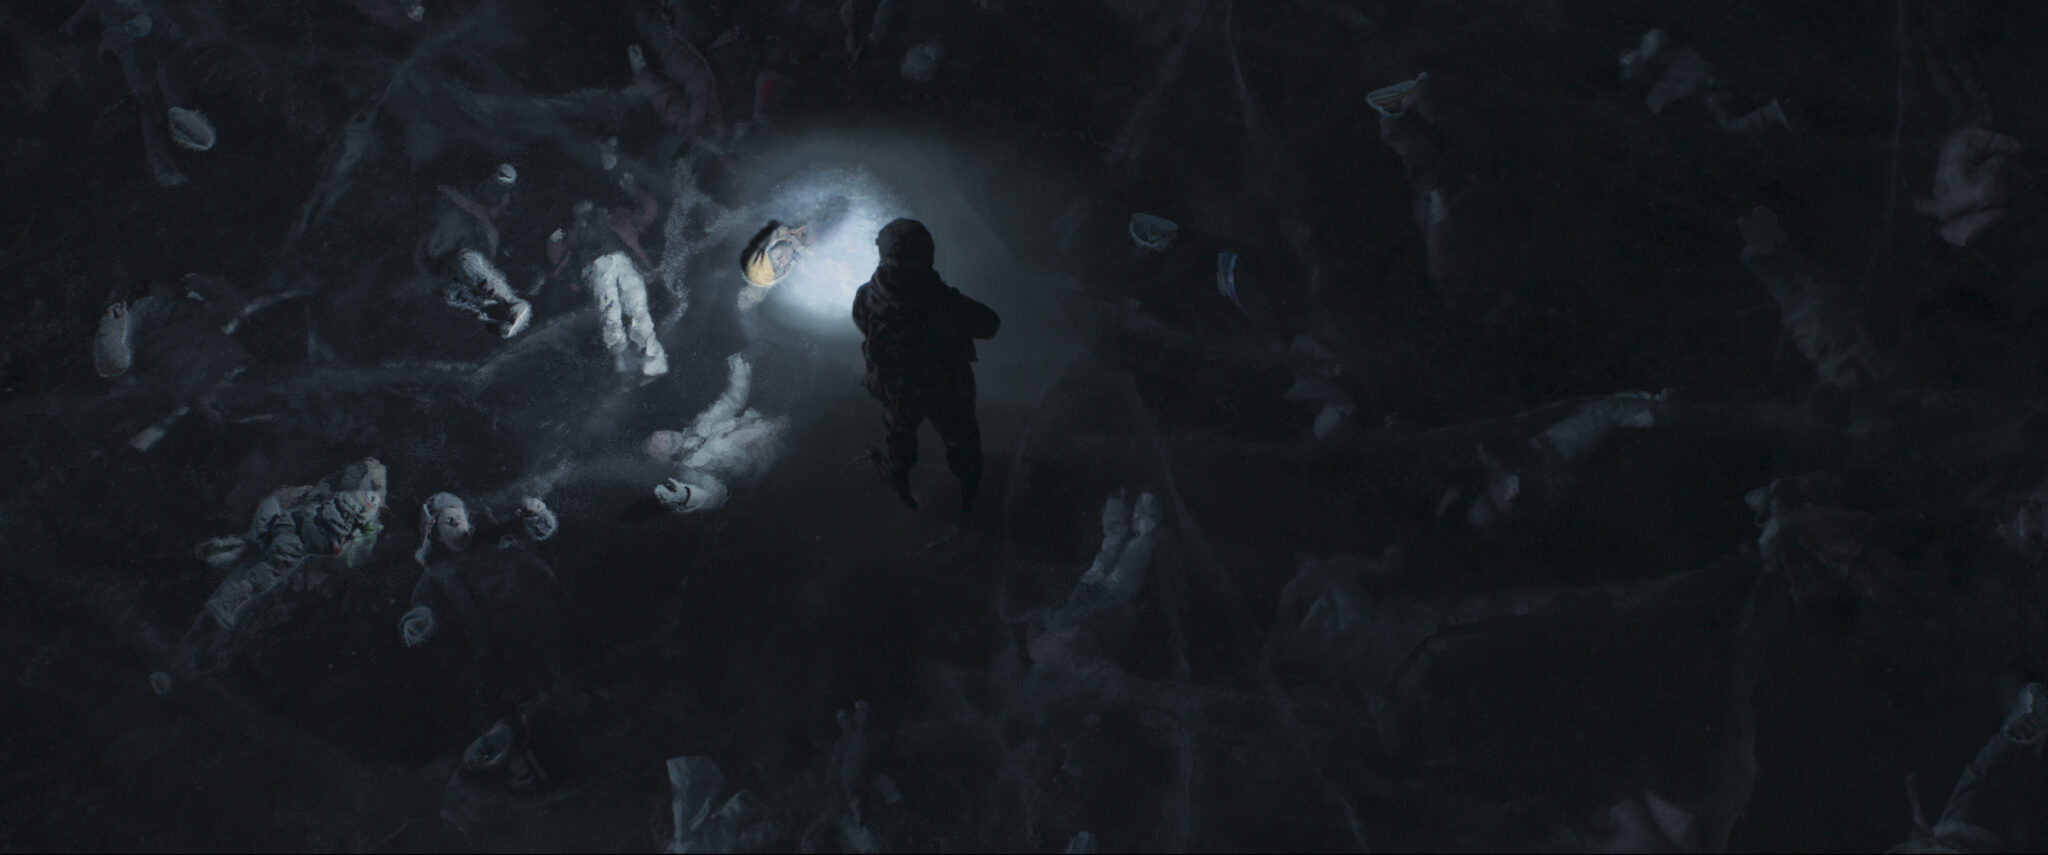 Eine Aufnahme von oben auf einen zugefrorenen See. Unter der Eisdecke sieht man tote Körper, die nur von einer Taschenlampe beleuchtet werden.